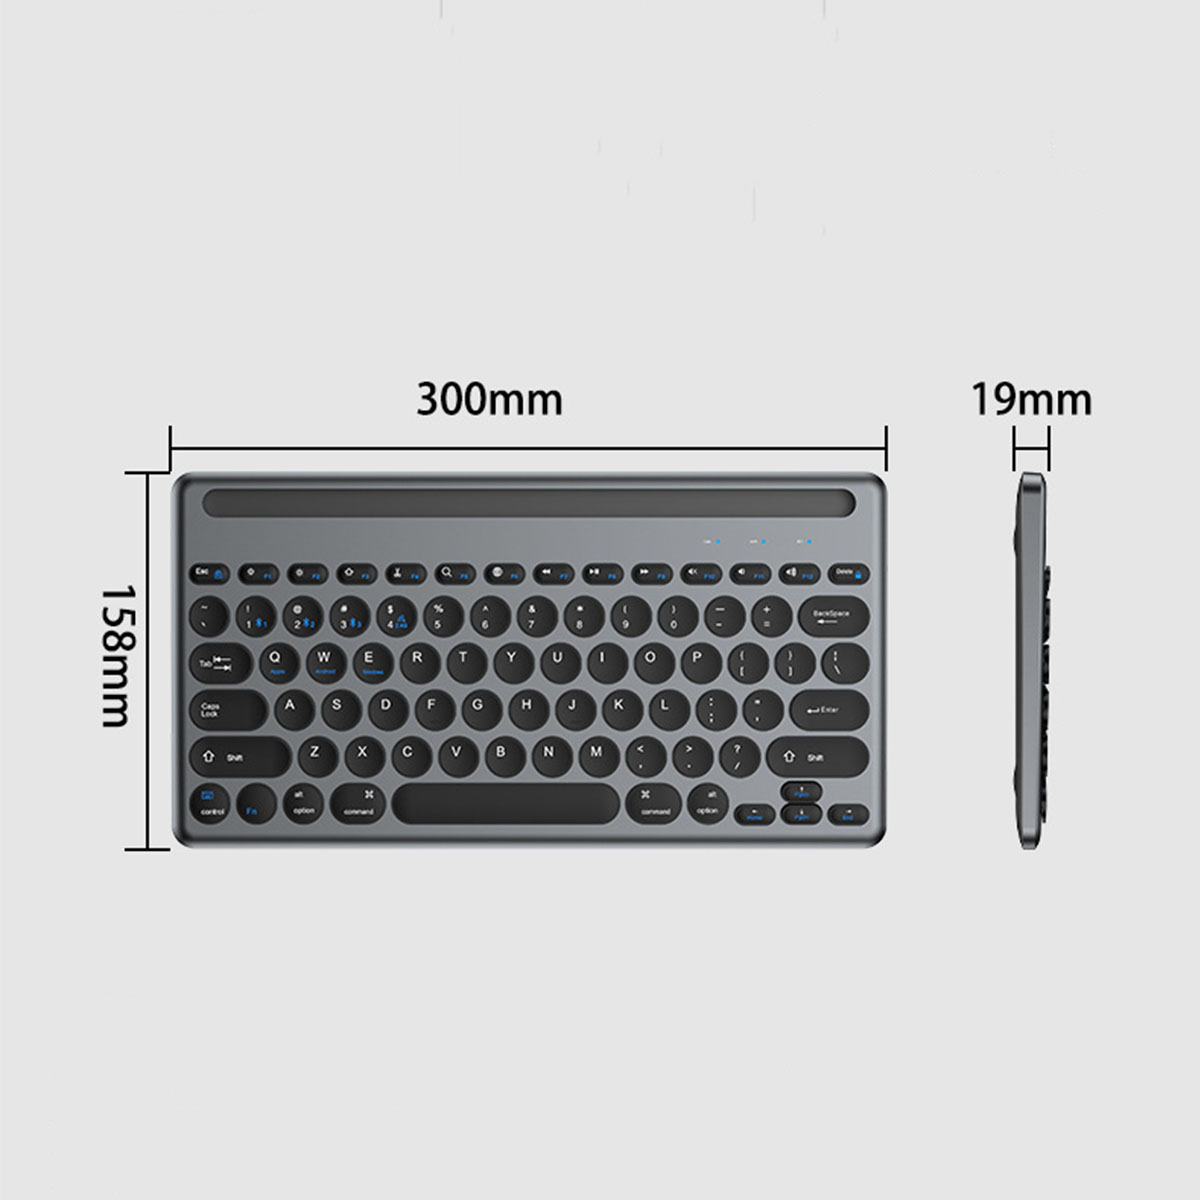 BRIGHTAKE Revolutionäre Grau und Retro-Tasten Tasche Maus, Tastatur Leise Quad-Mode